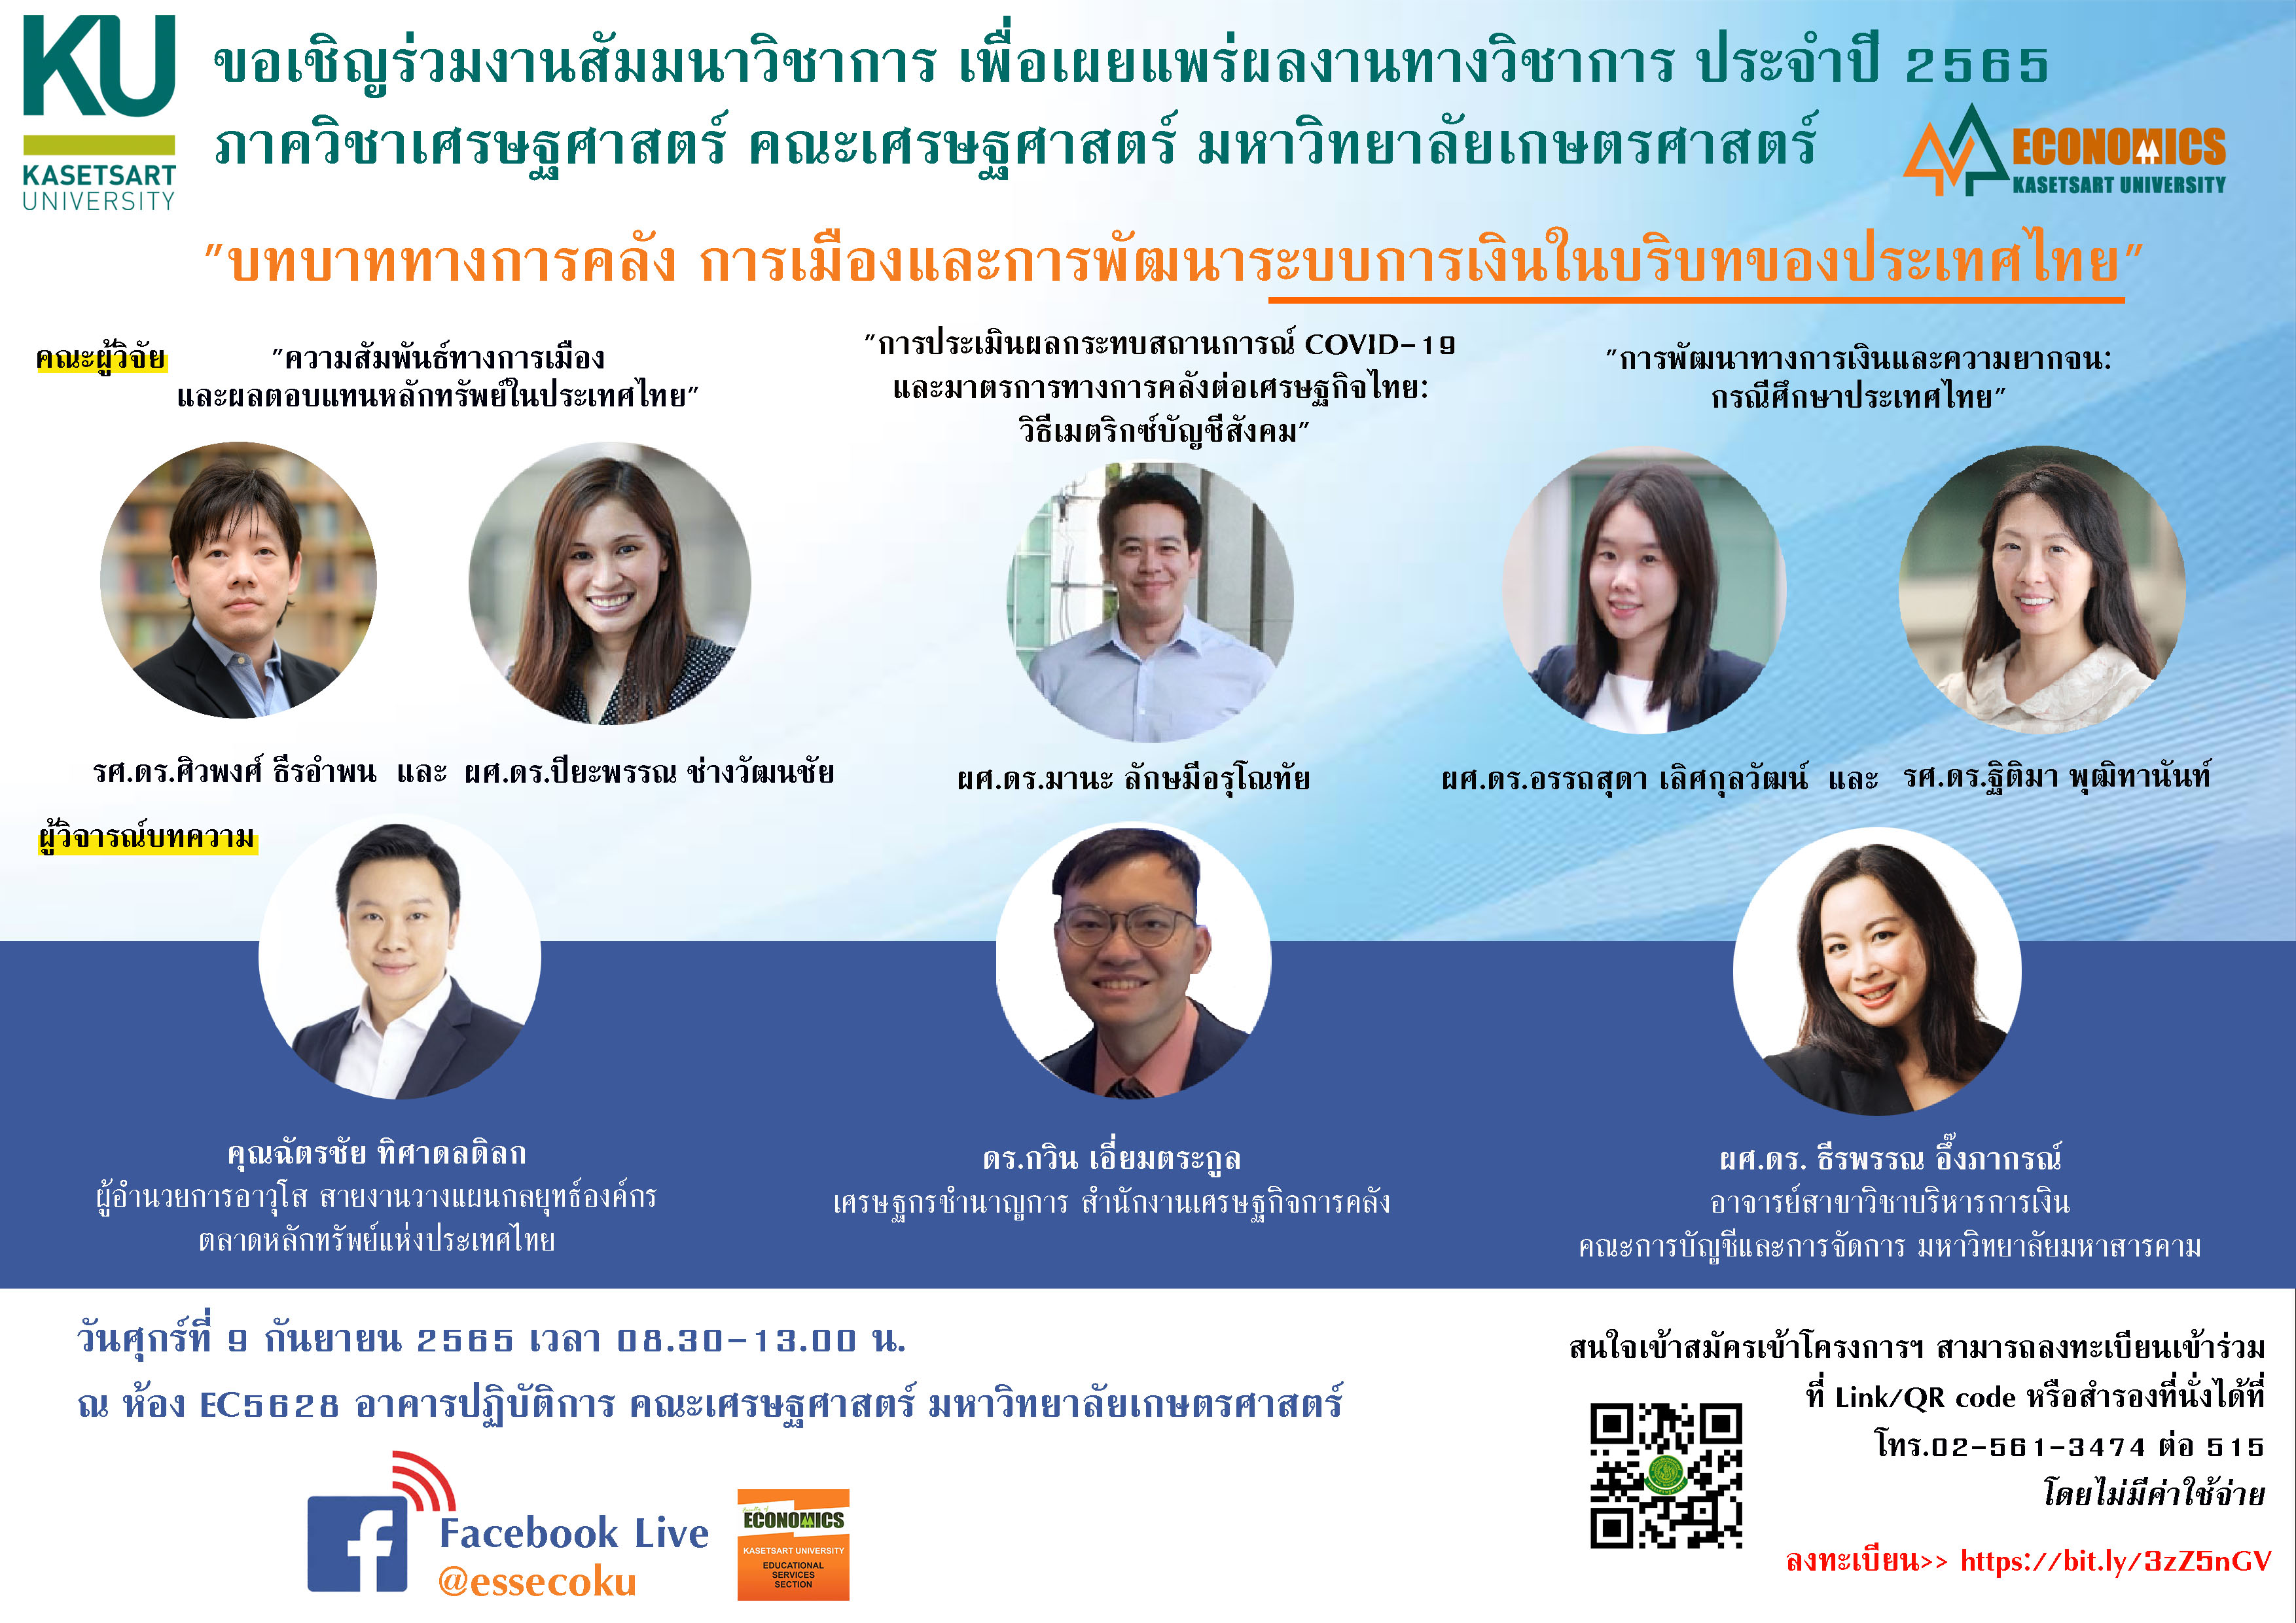 ขอเชิญร่วมงานสัมมนาทางวิชาการเพื่อเผยแพร่ผลงานทางวิชาการ ประจำปี 2565 ภาควิชาเศรษฐศาสตร์ คณะเศรษฐศาสตร์ มก. หัวข้อ “บทบาททางการคลังการเมืองและการพัฒนาระบบการเงิน ในบริบทของประเทศไทย”  วันศุกร์ที่ 9 ก.ย. 2565 เวลา 08.30 – 13.00 น. ณ ห้อง EC5628 อาคารปฏิบัติการ คณะเศรษฐศาสตร์ และ Facebook Live @essecoku